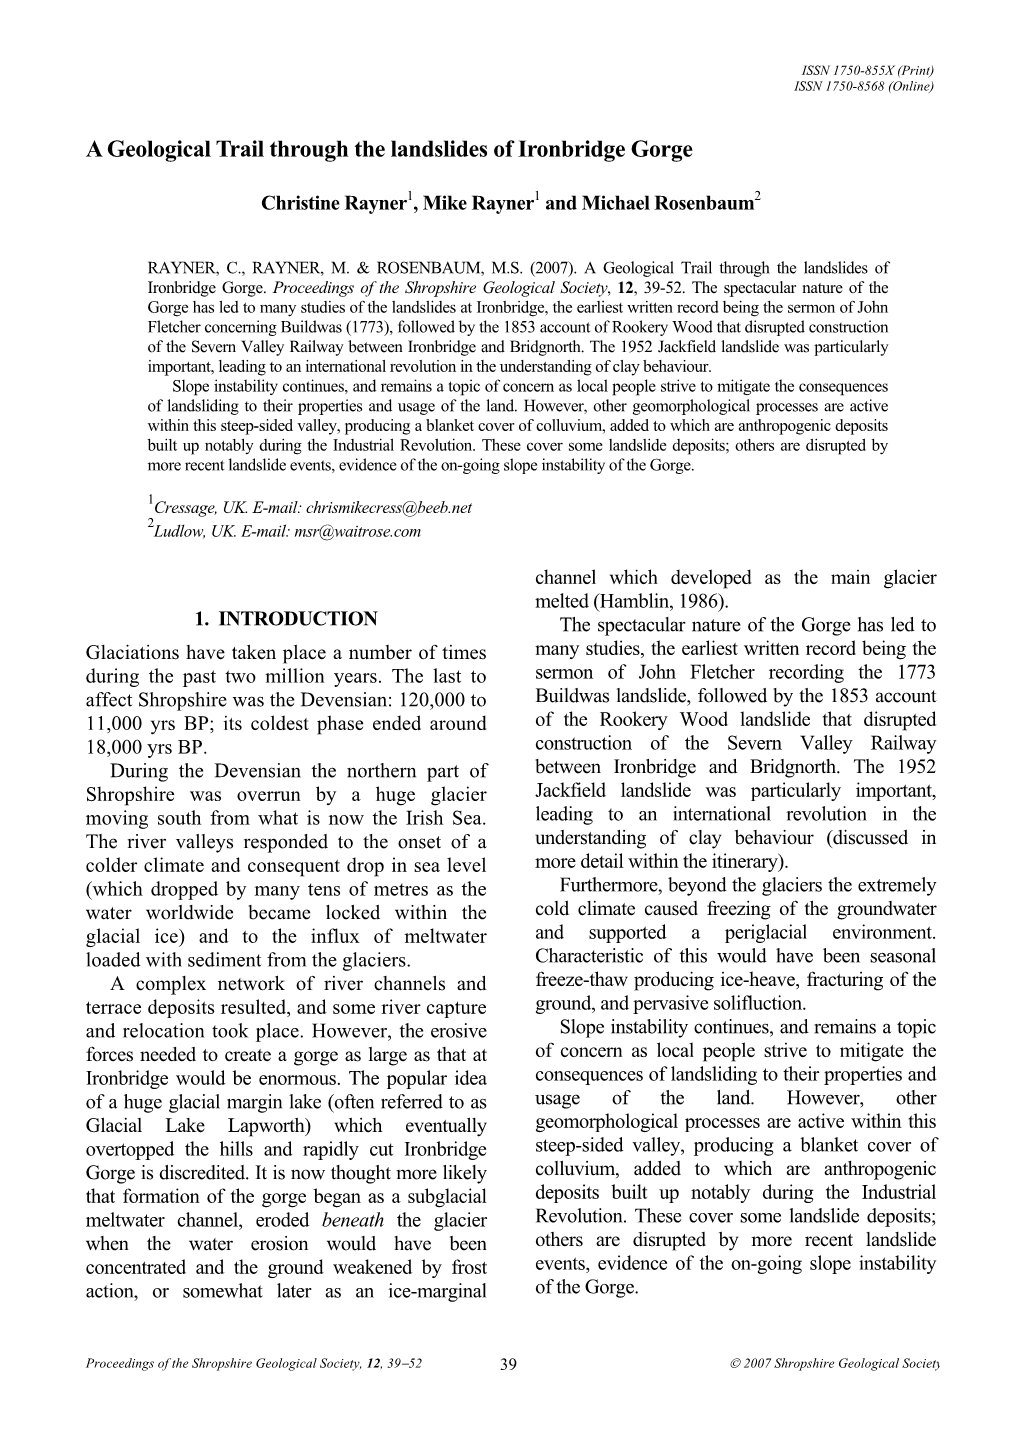 SGS Proceedings (2007), No.12